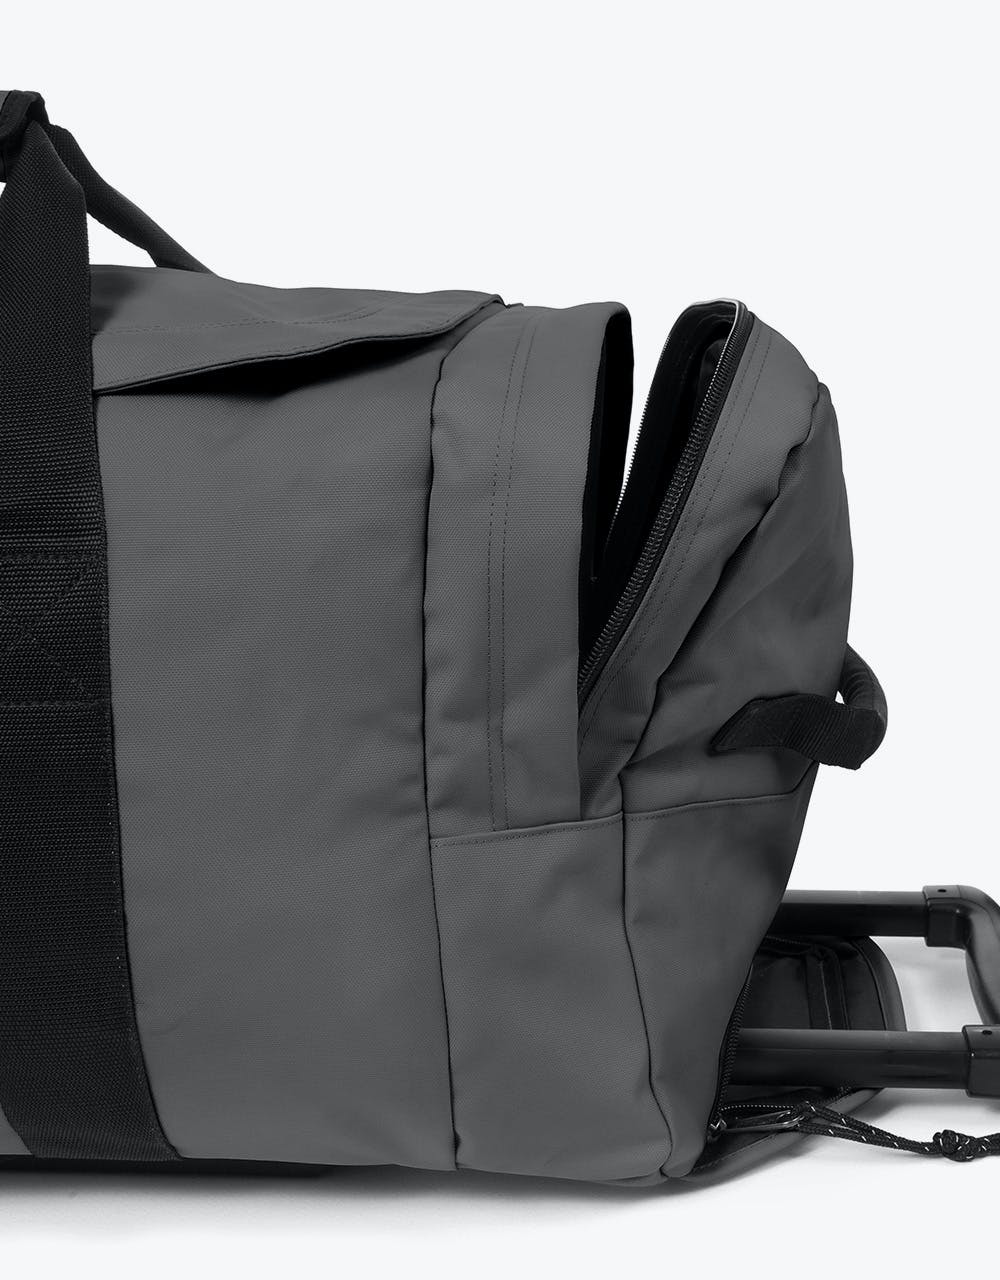 Eastpak Leatherface Medium Wheeled Luggage Bag - Woven Grey